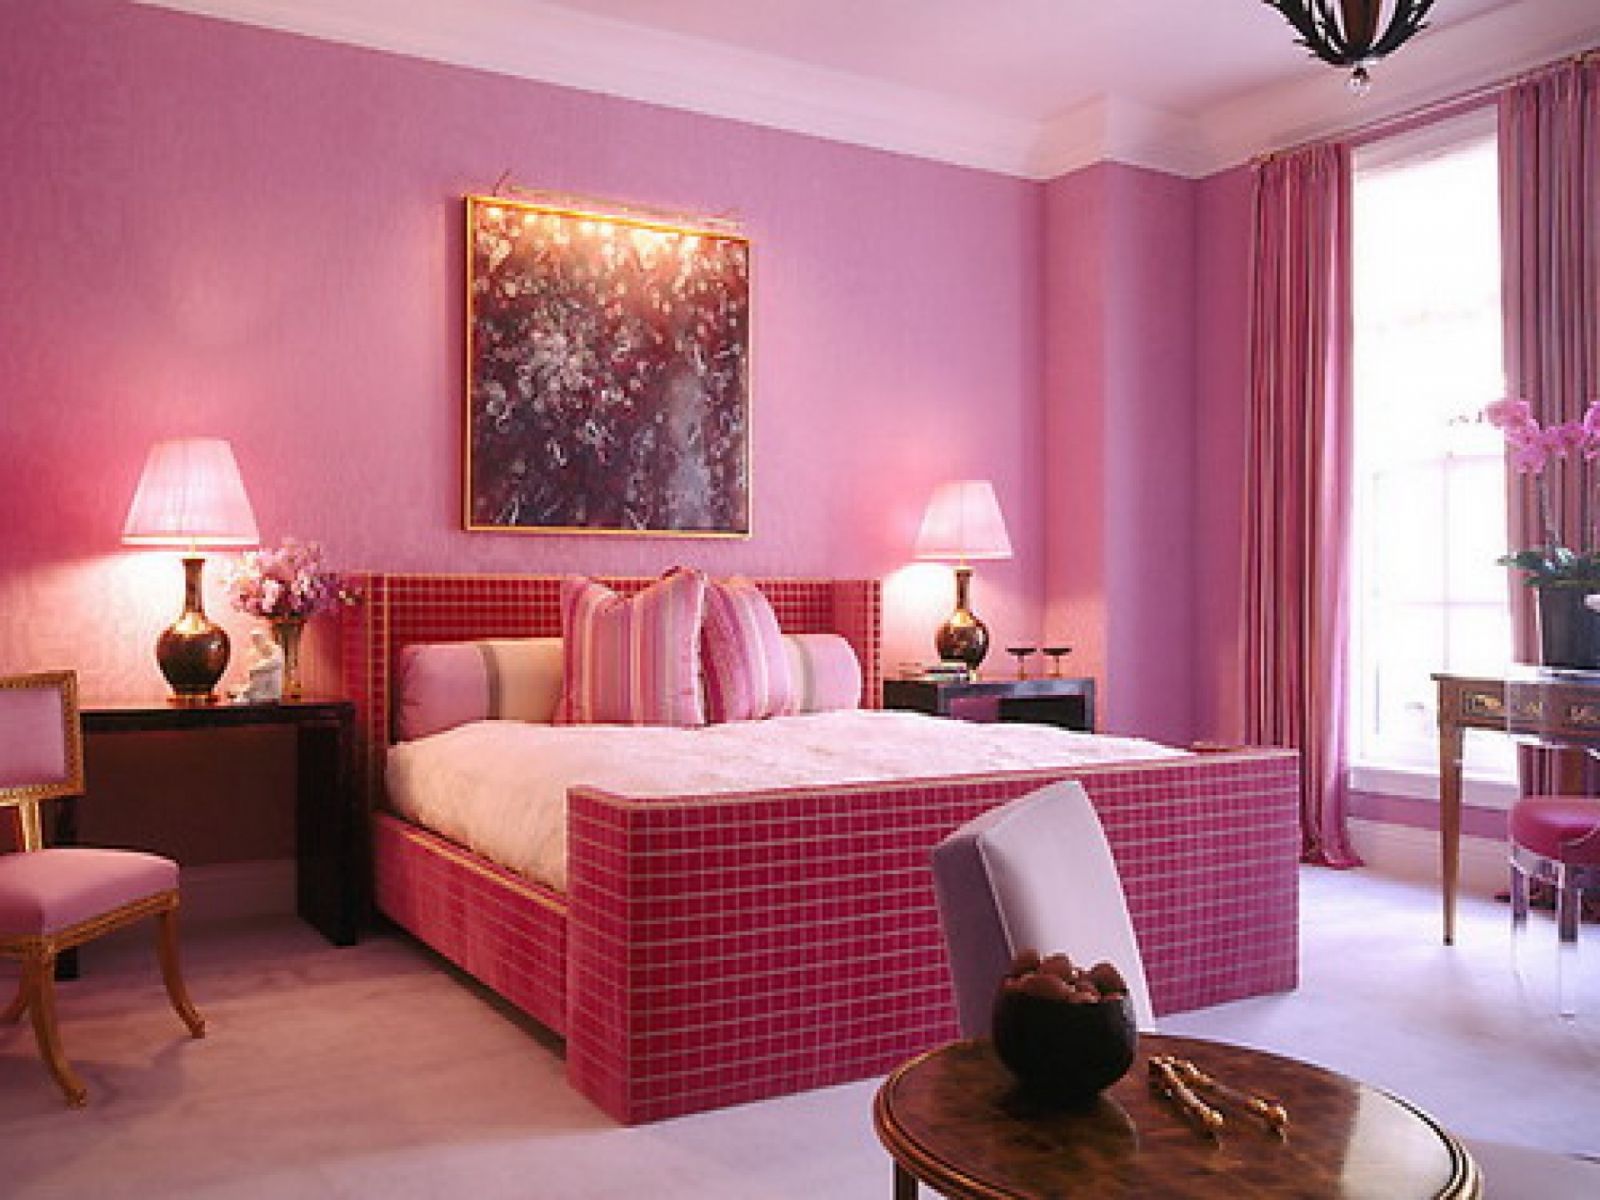 Phòng ngủ của người mệnh Hoả có thể kết hợp màu sơn và nội thất như thế này